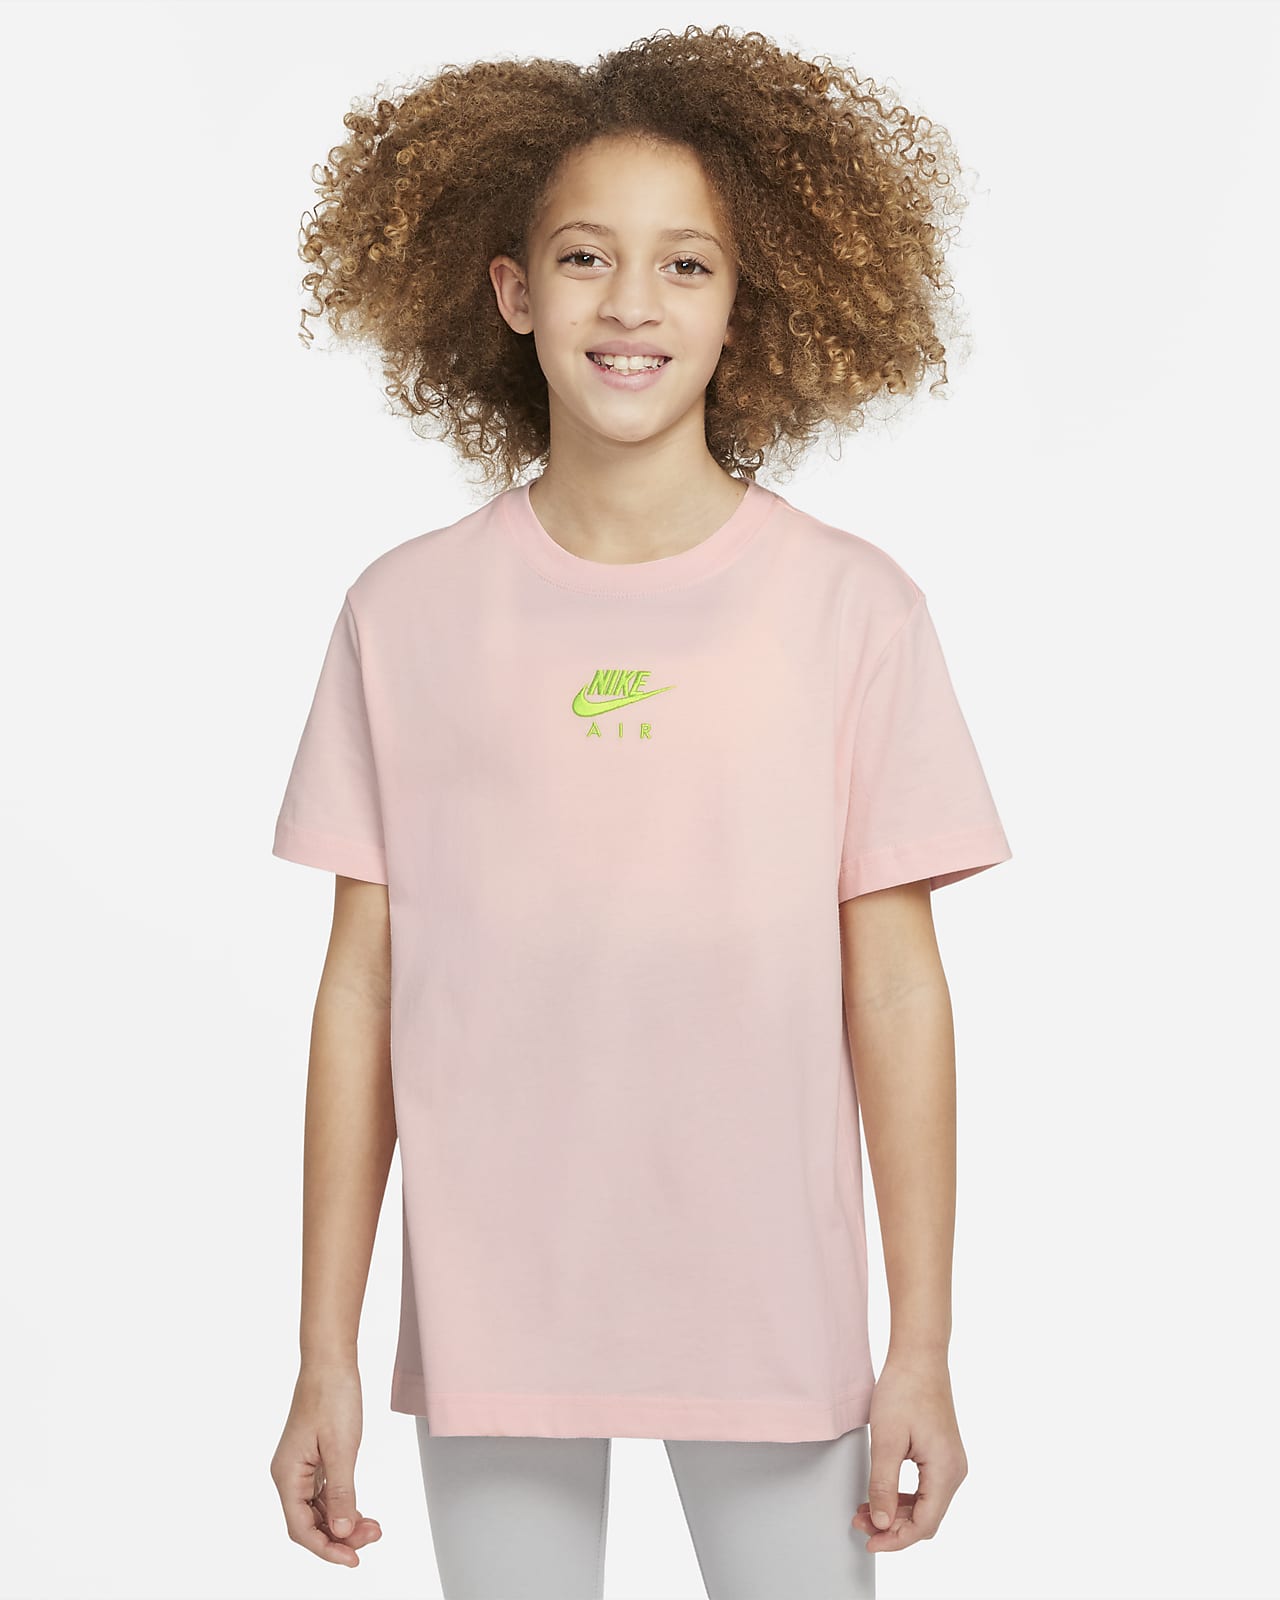 T-shirt Nike Air - Ragazza